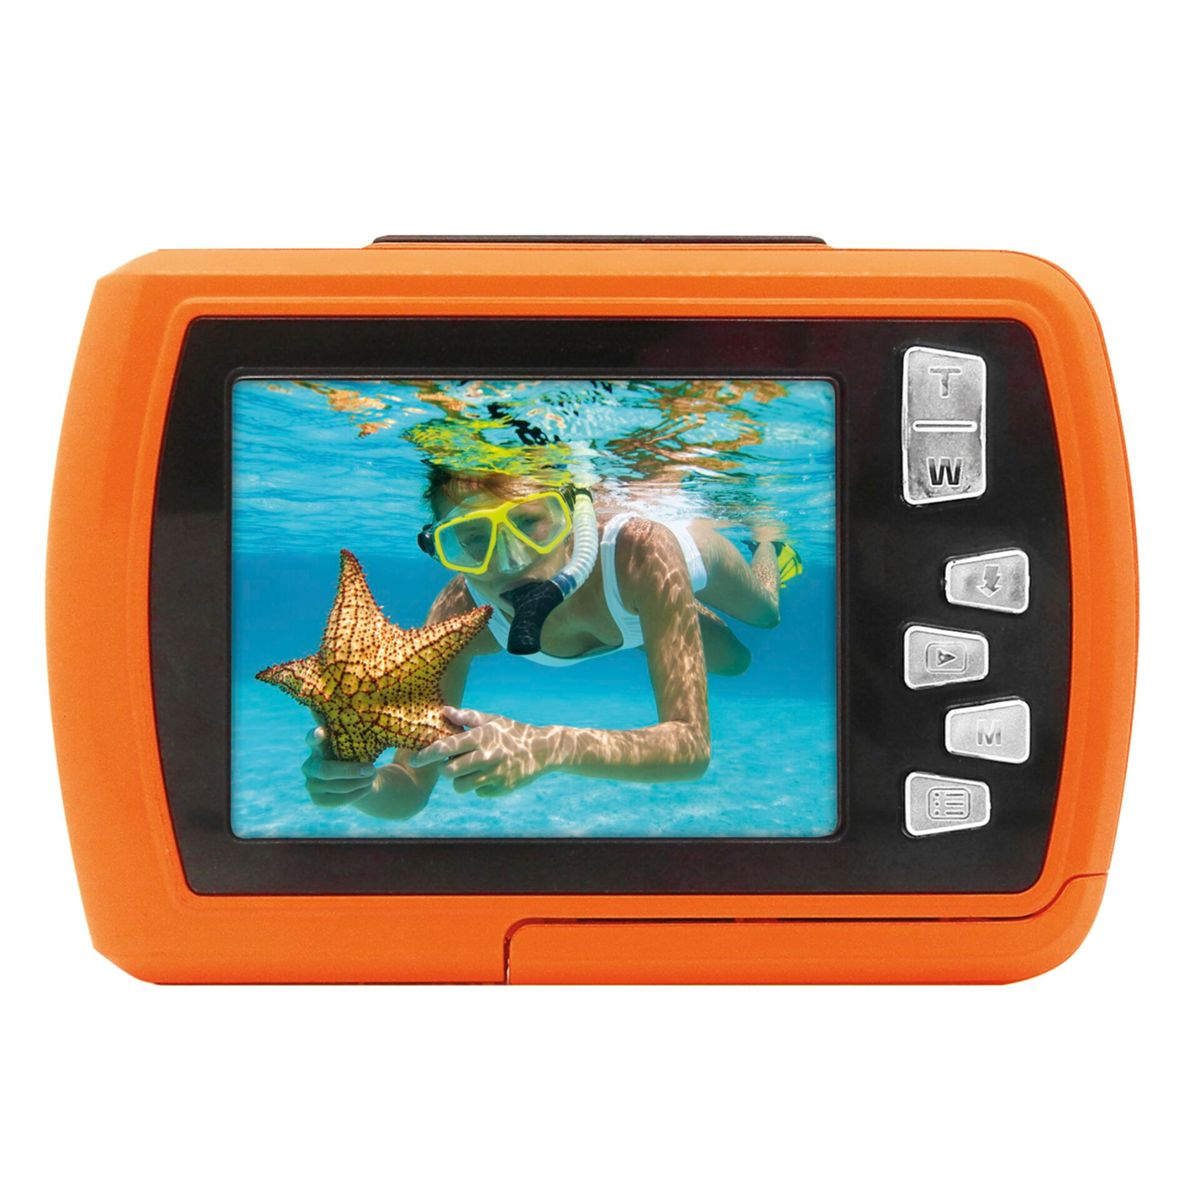 EASYPIX Aquapix W2024 Splash Orange orange Unterwasserkamera